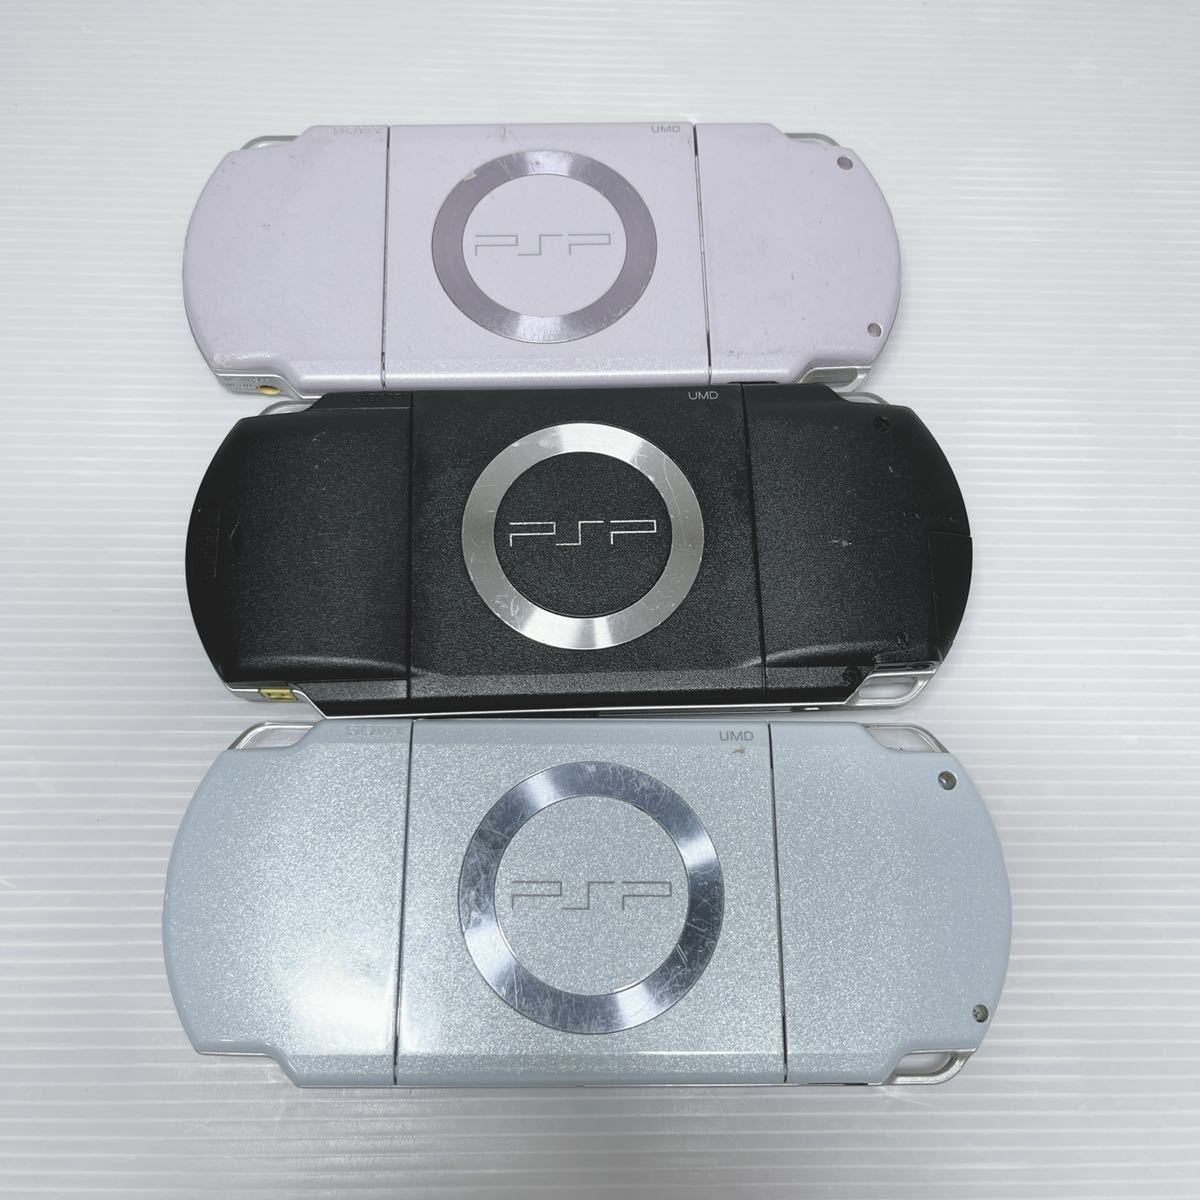 SONY PSP 本体 PSP 2台 PSP 1台 合計3台 PSP 本体 PSP